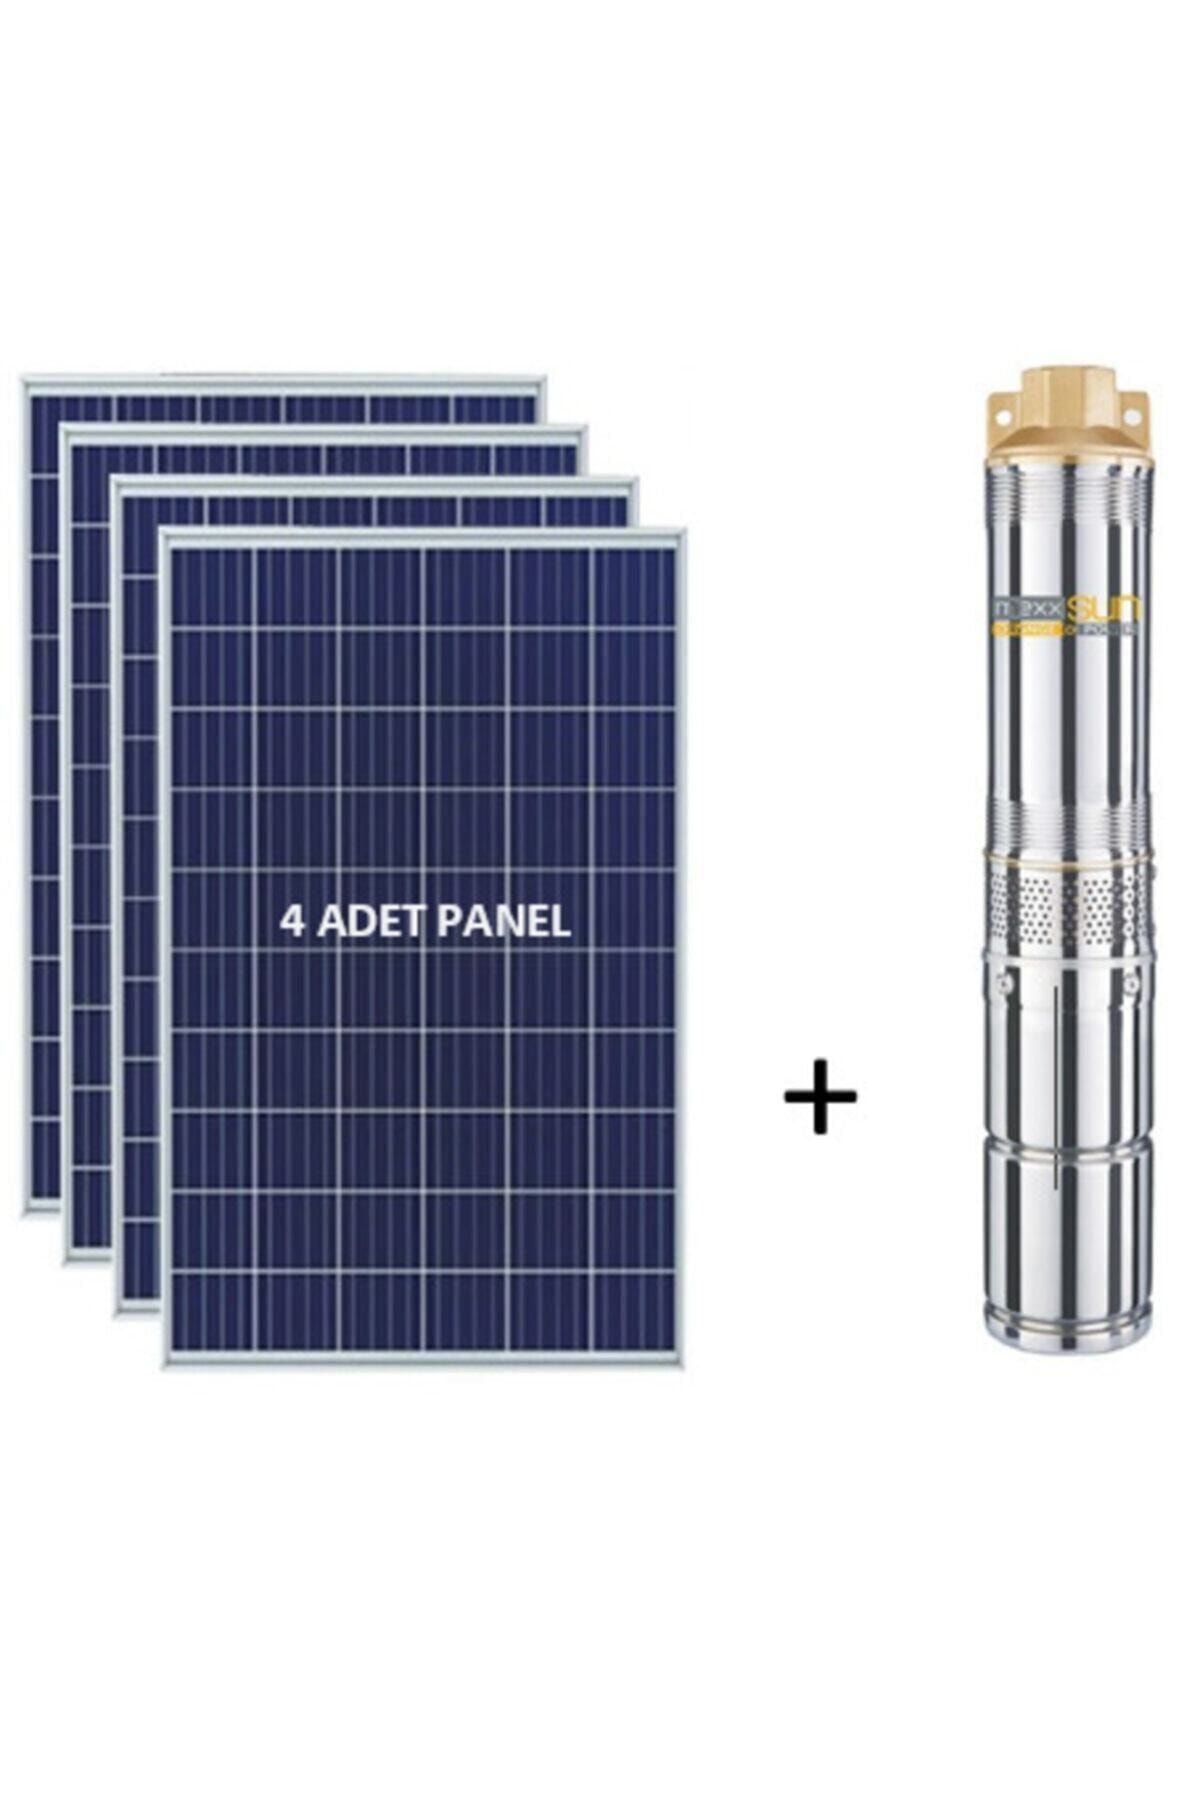 MEXXSUN 275 Watt 4 Adet Güneş Paneli Ve Dc Solar Pompa Tak Çalıştır Hazır Takım